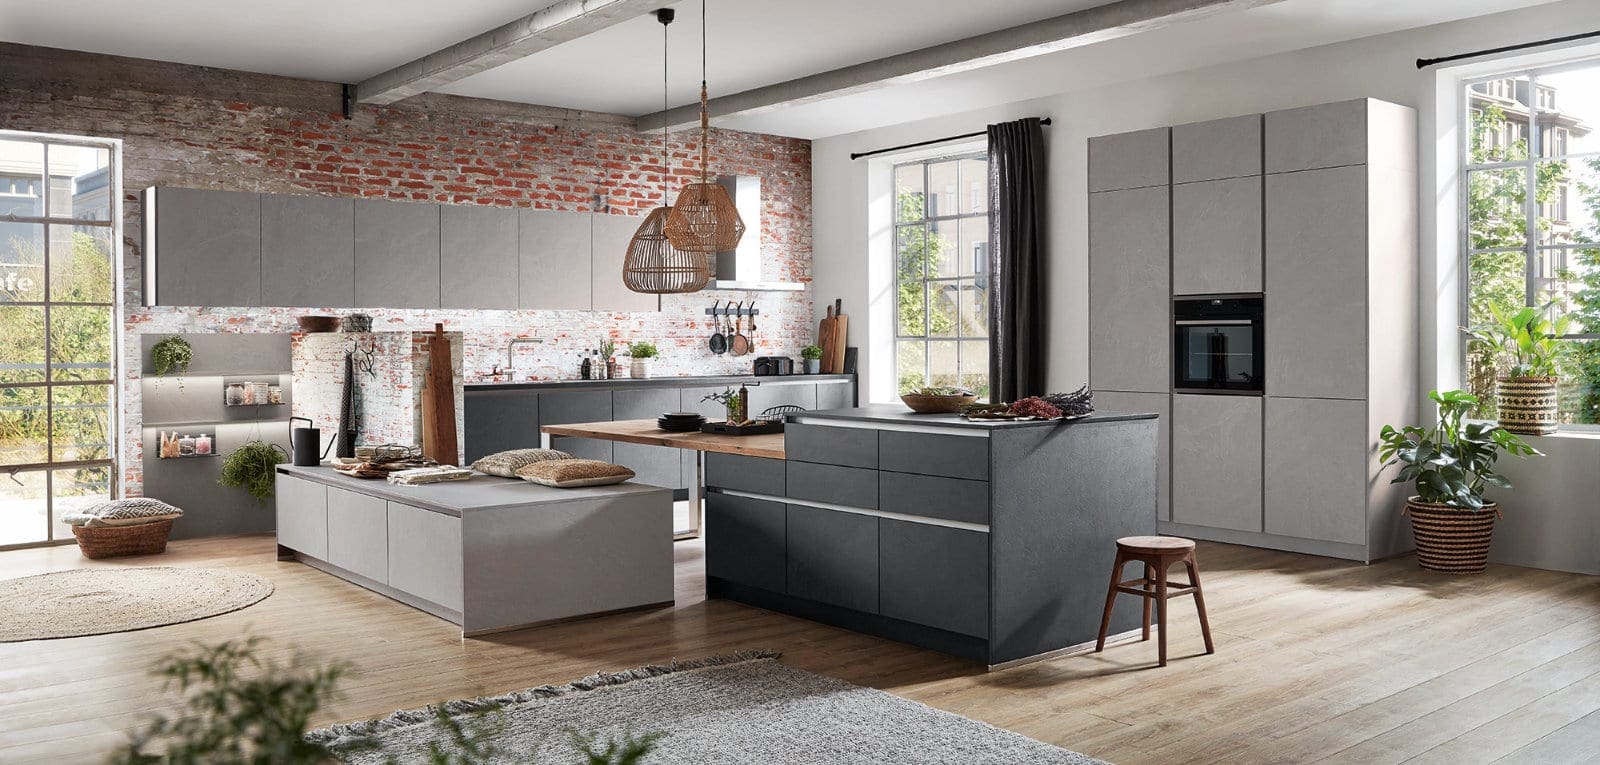 Nobilia Modern Concrete Handleless Open Plan Kitchen With Island 2021 2 | MHK Kitchen Experts